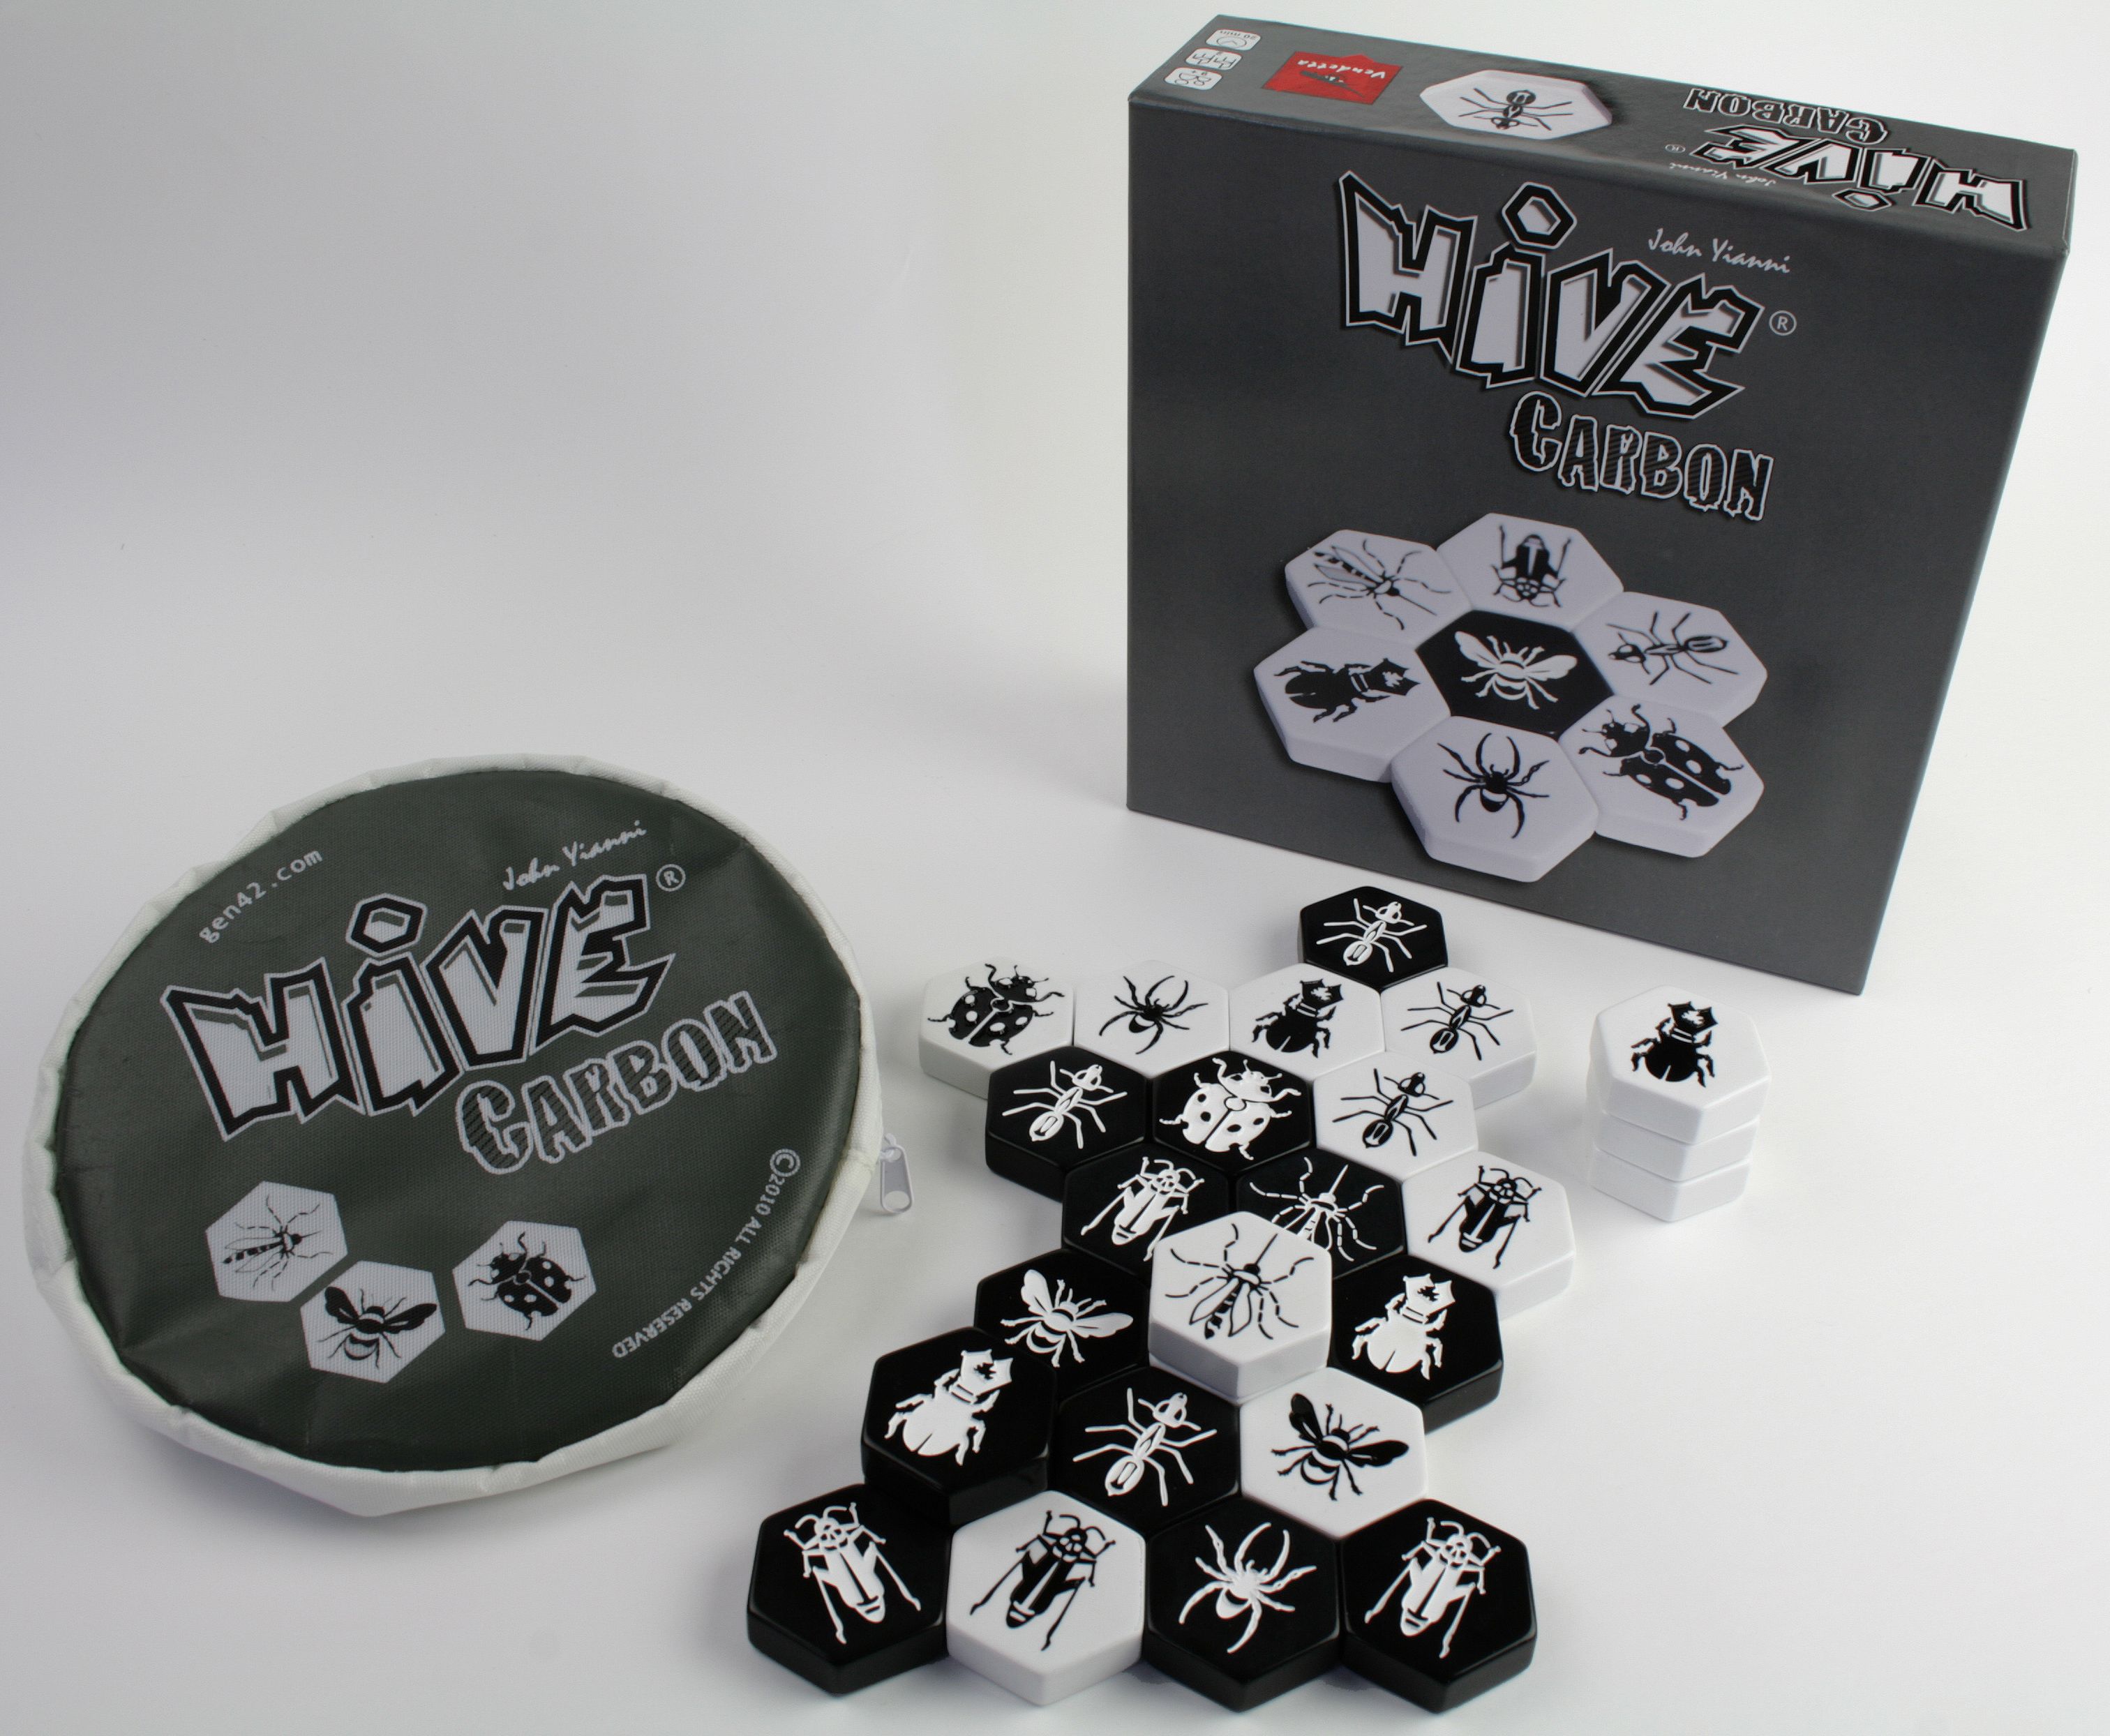 Hive Carbon | L.A. Mood Comics and Games